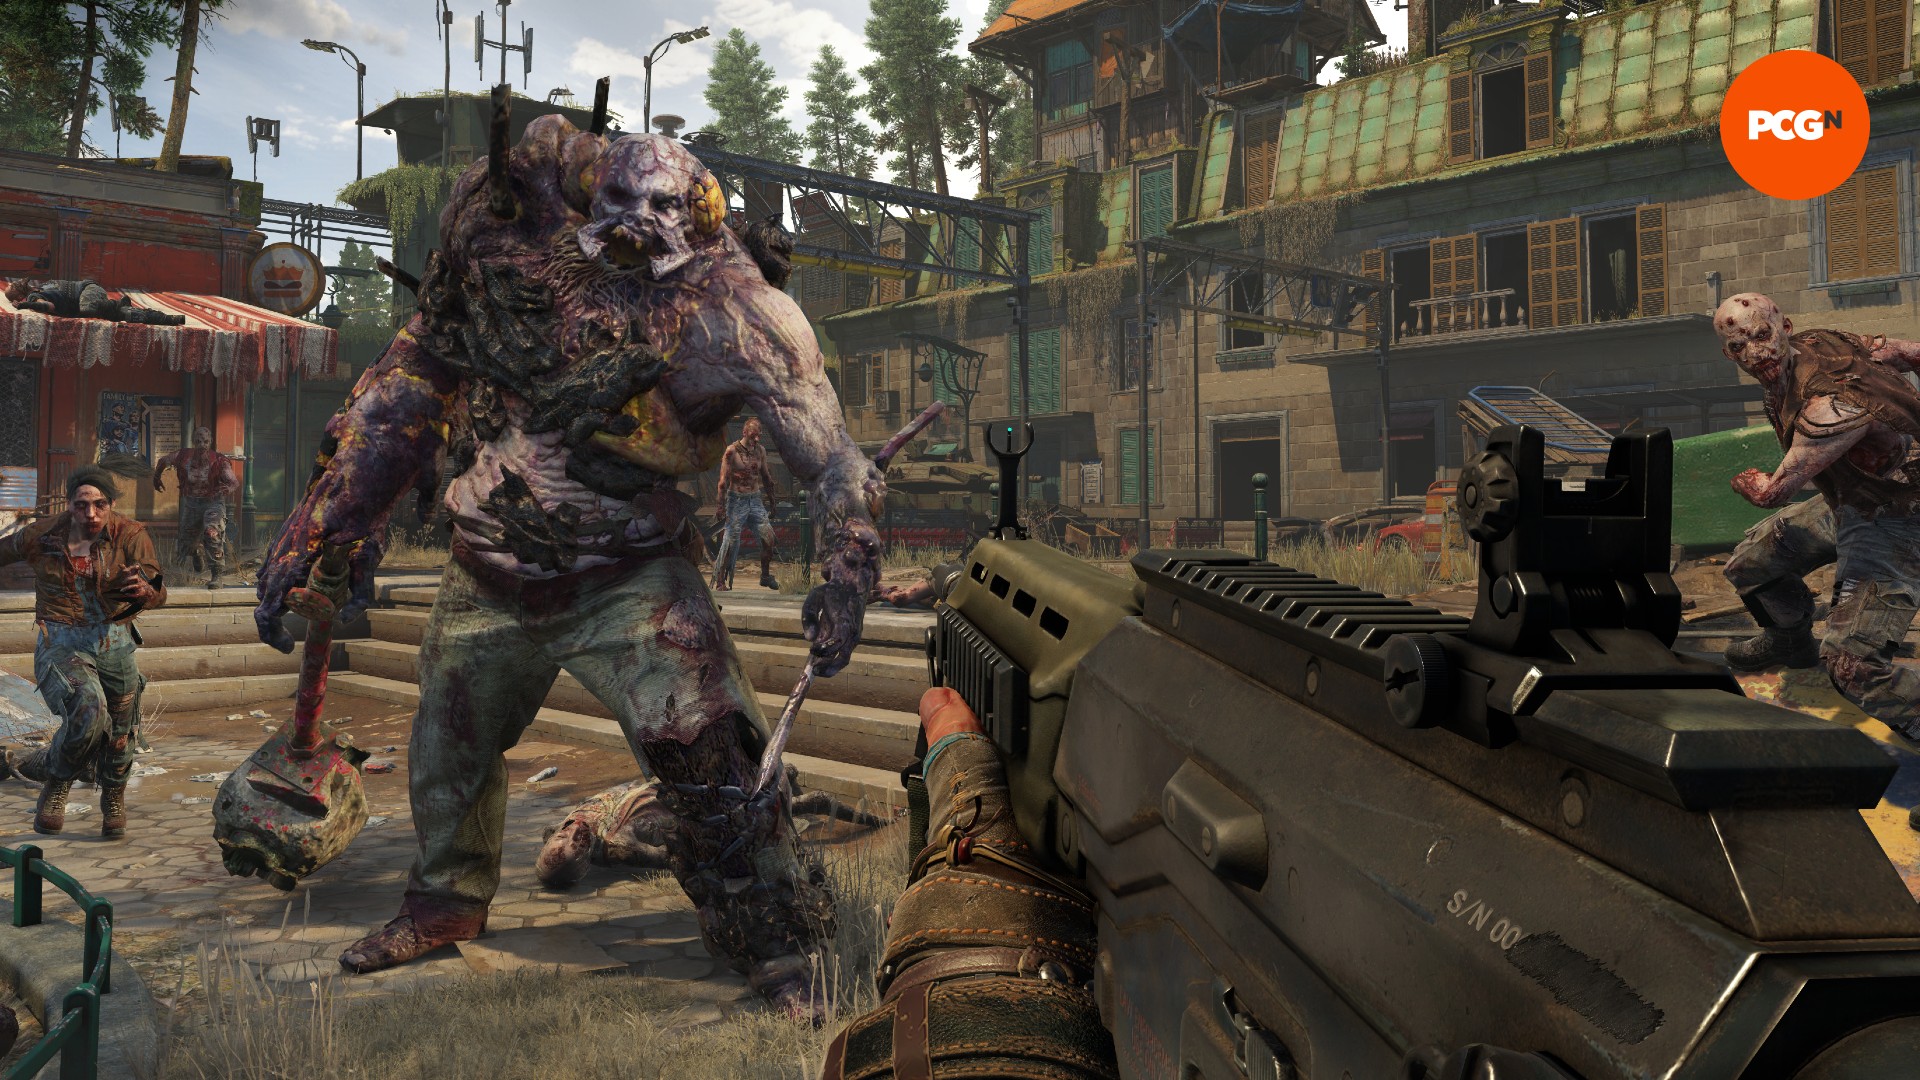 Un'enorme creatura zombi cammina verso un uomo che impugna una pistola, affiancata da zombi più piccoli.